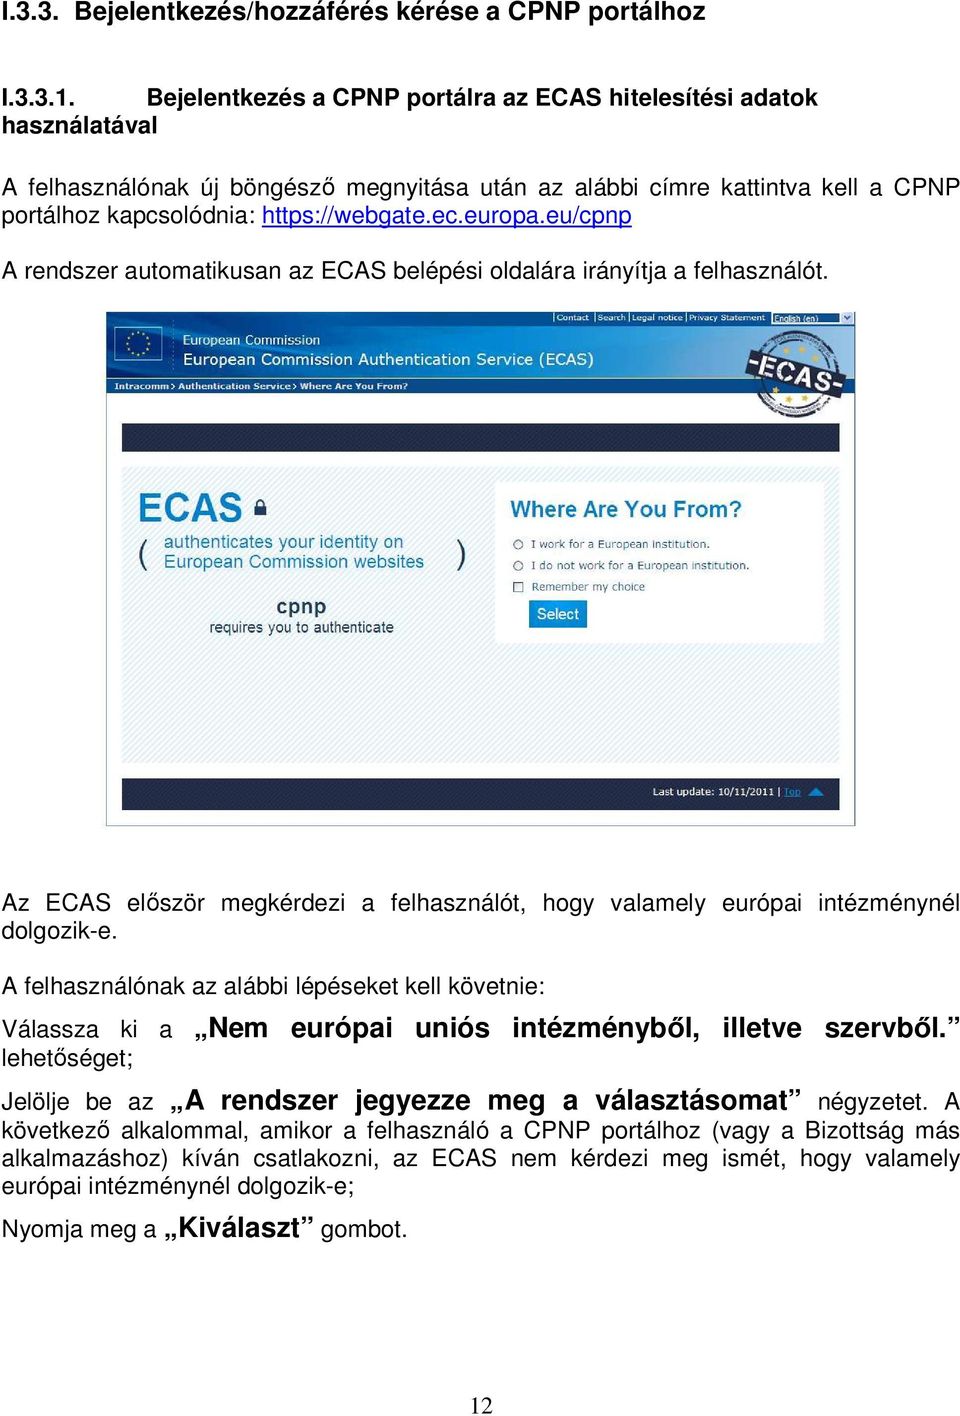 europa.eu/cpnp A rendszer automatikusan az ECAS belépési oldalára irányítja a felhasználót. Az ECAS először megkérdezi a felhasználót, hogy valamely európai intézménynél dolgozik-e.